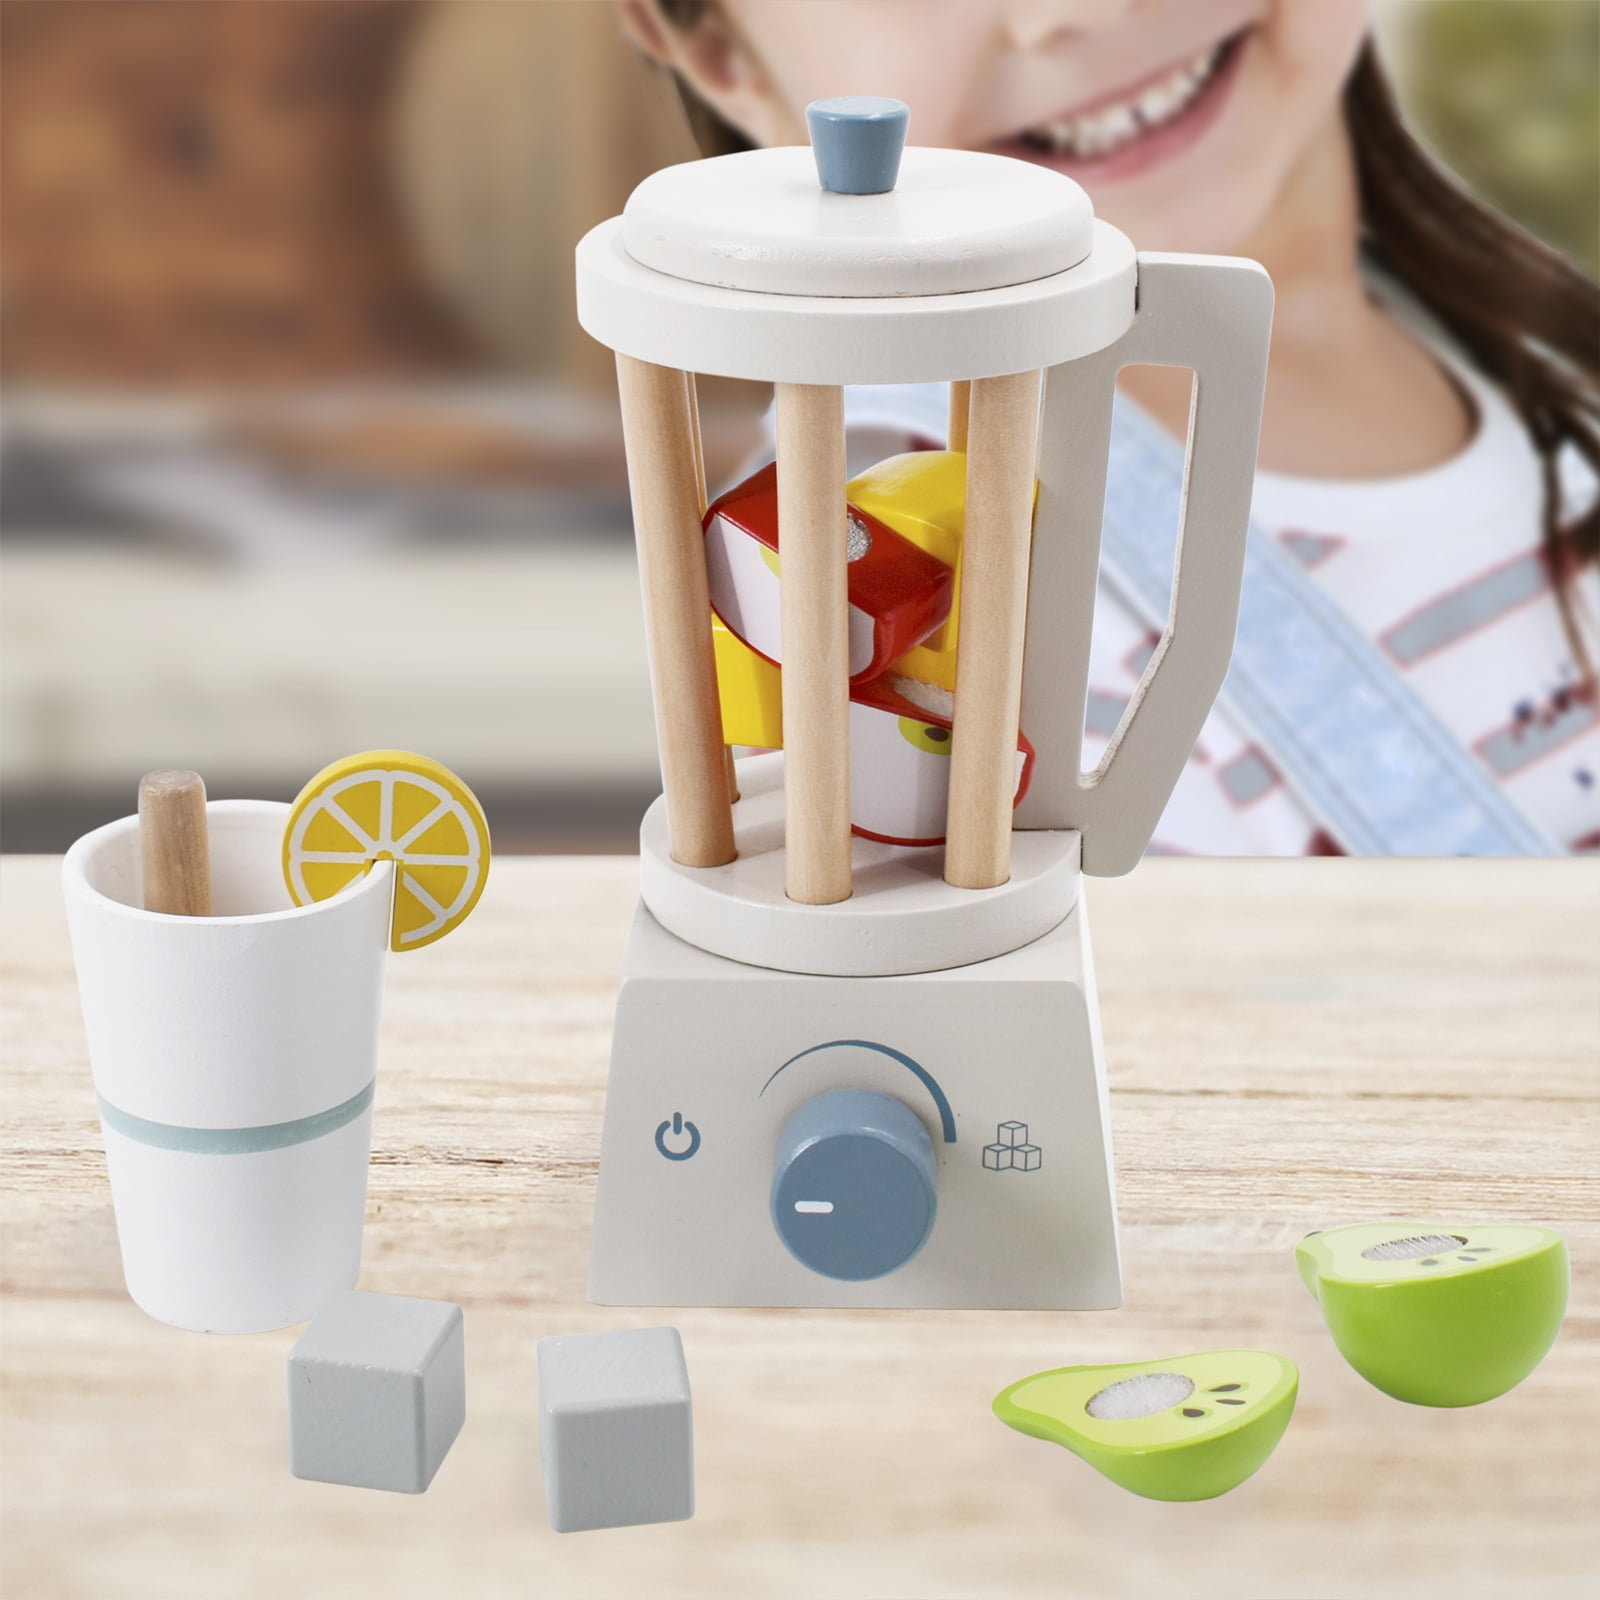 Hape Fruit Smoothie Blender Kids Wooden Pretend Kitchen Appliance Play Set  Toy, 1 Piece - Kroger